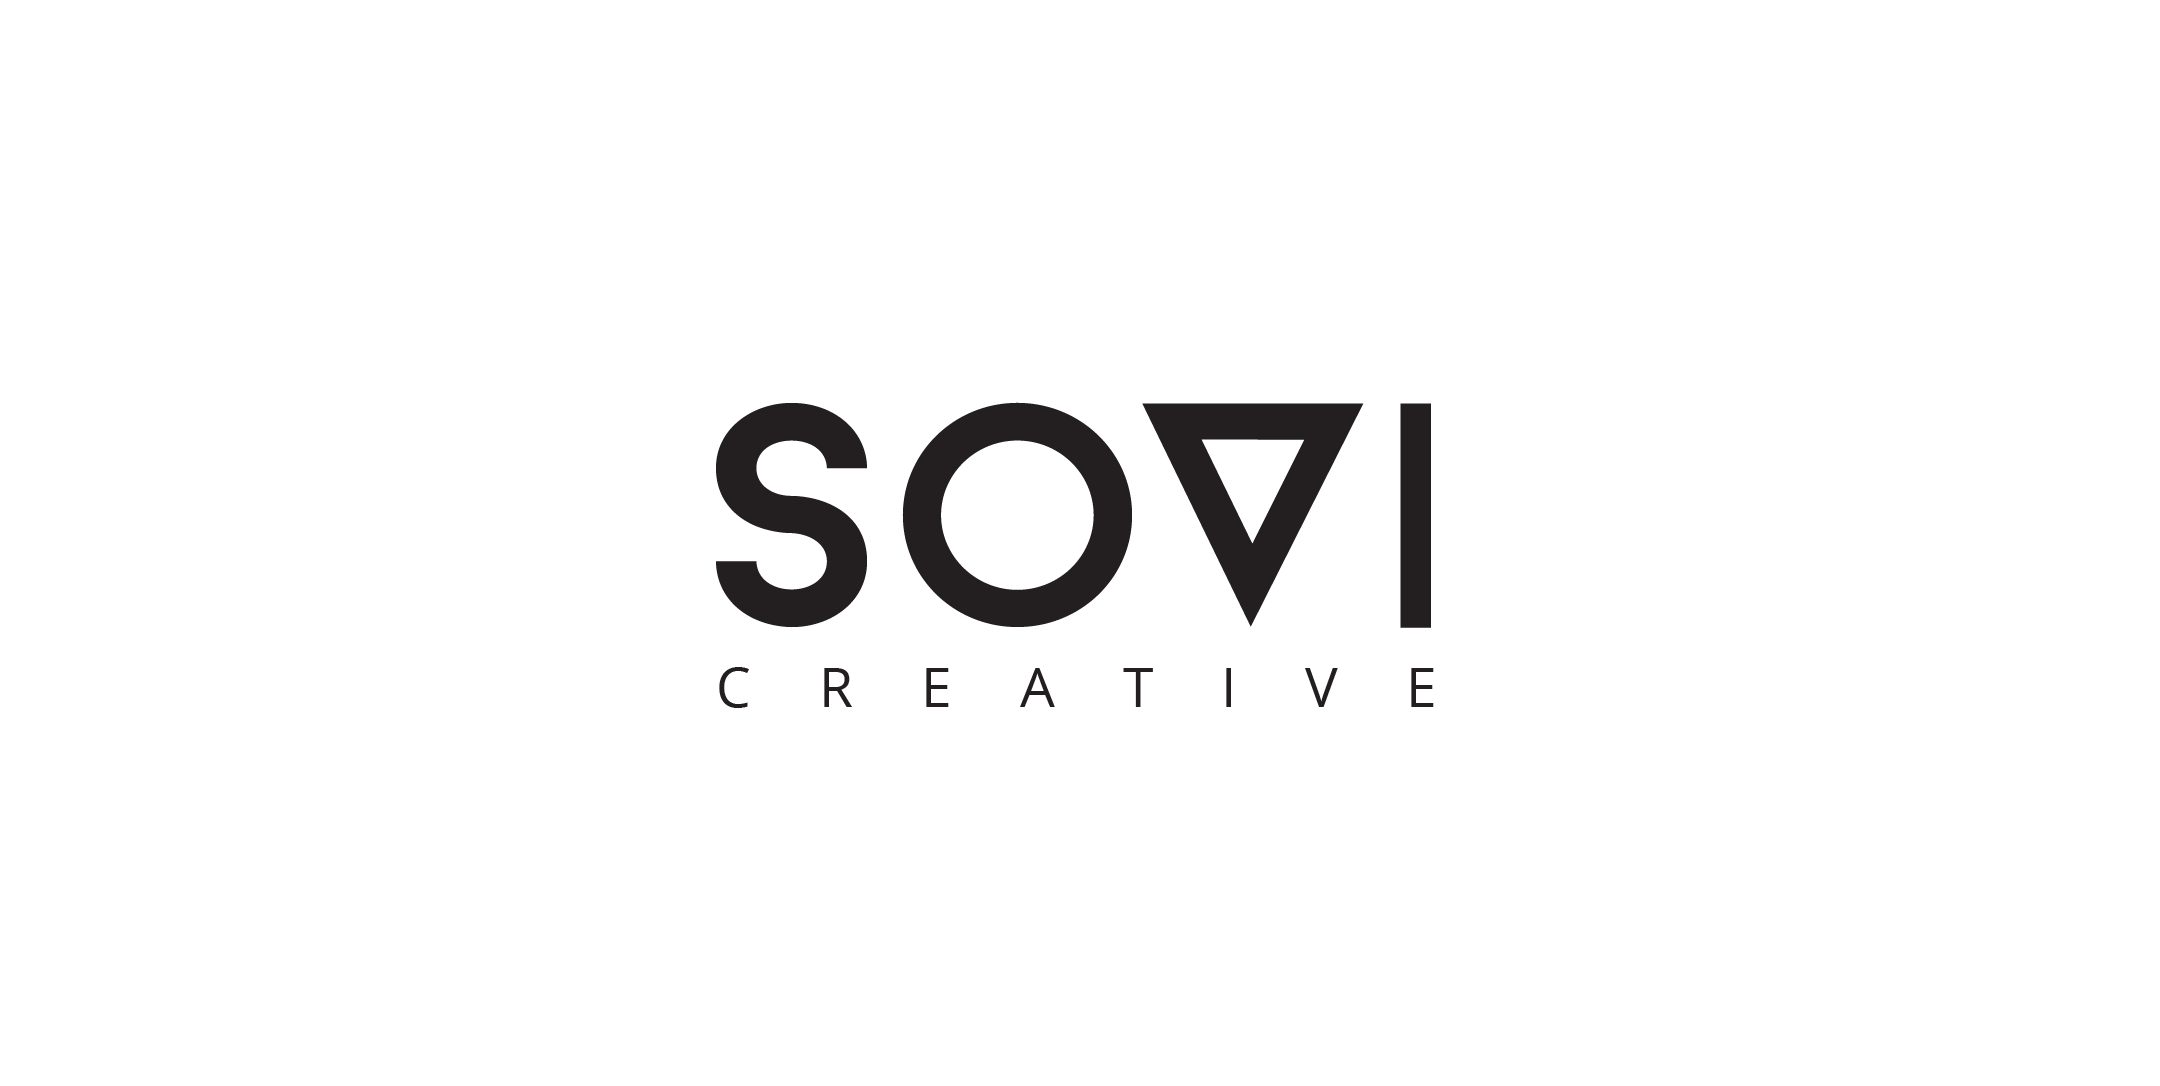 Sovi Creative logo